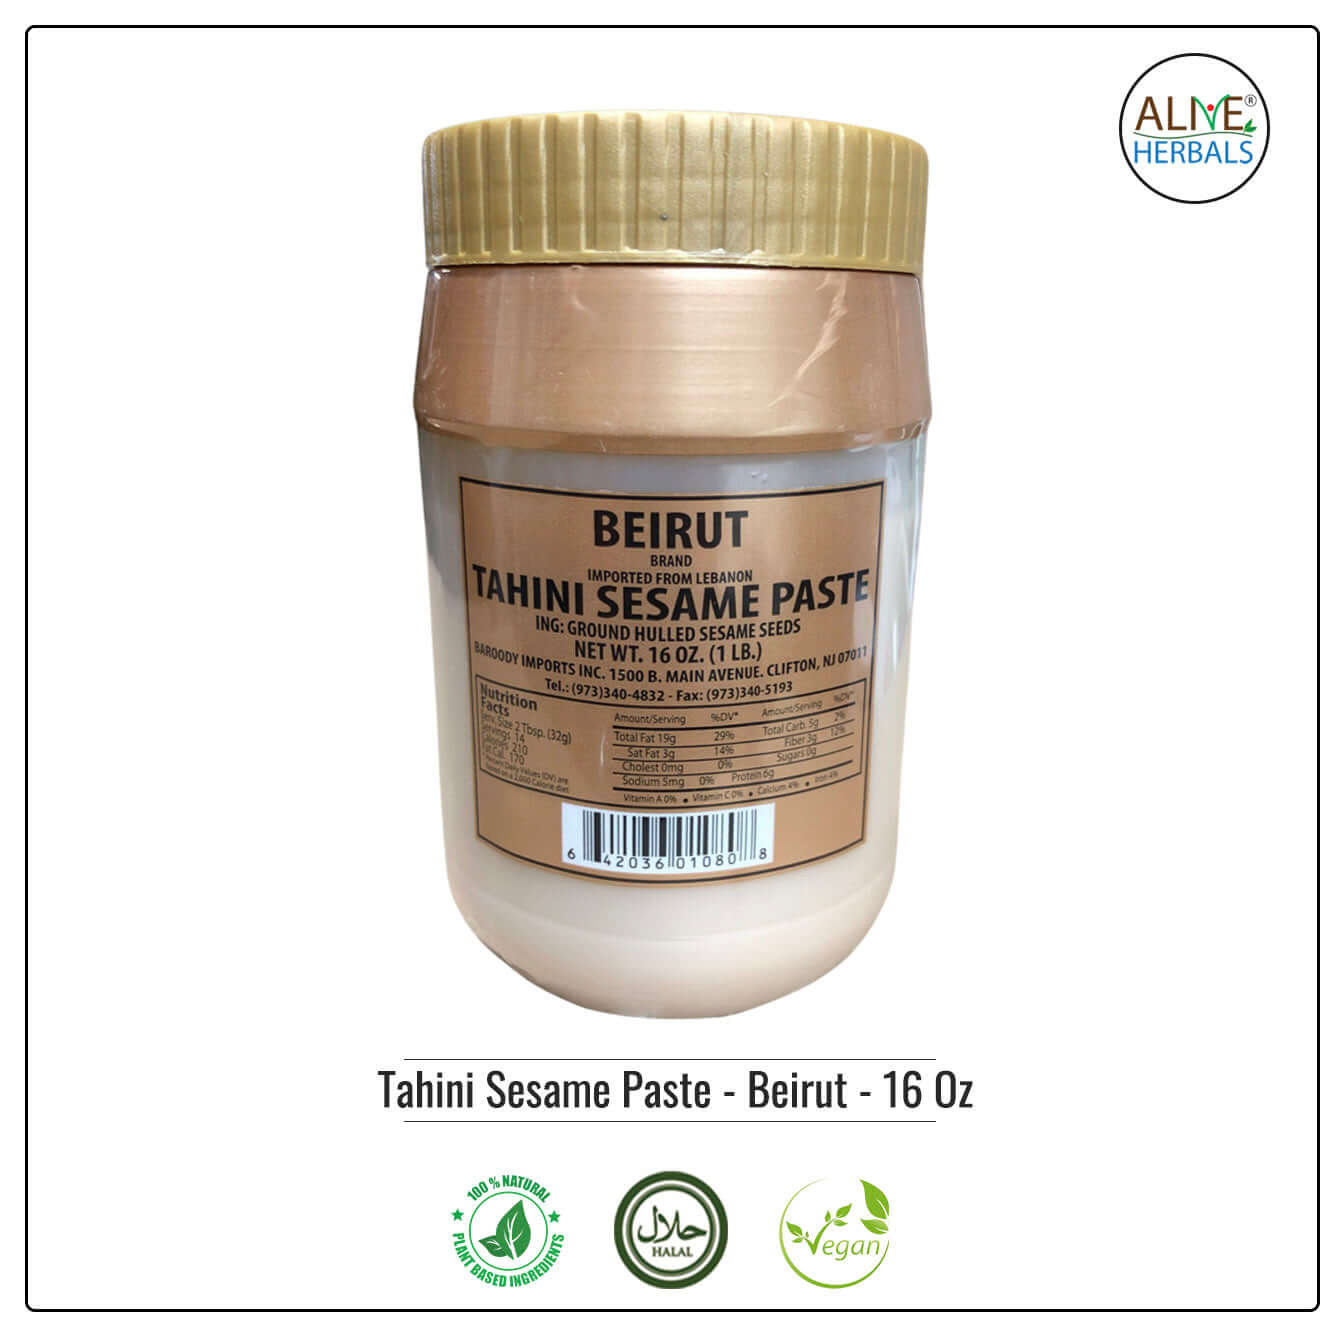 Tahini Sesame Paste - Beirut - Buy at Natural Food Store | Alive Herbals.